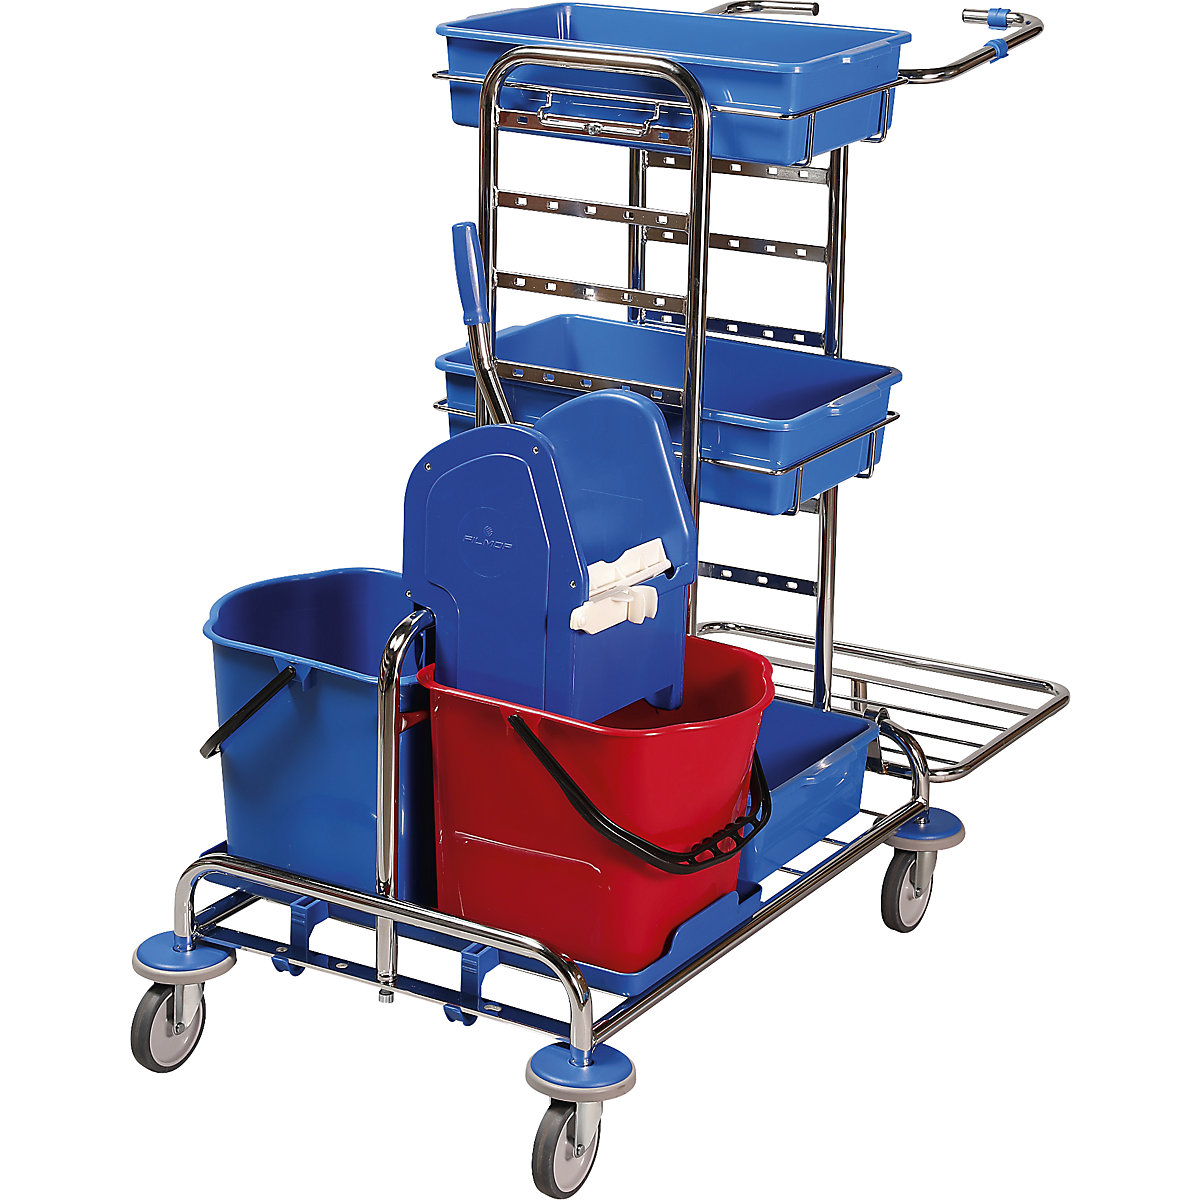 Úklidový a servisní vozík, d x š x v 1050 x 580 x 1100 mm, 3 plastové přihrádky, pochromováno